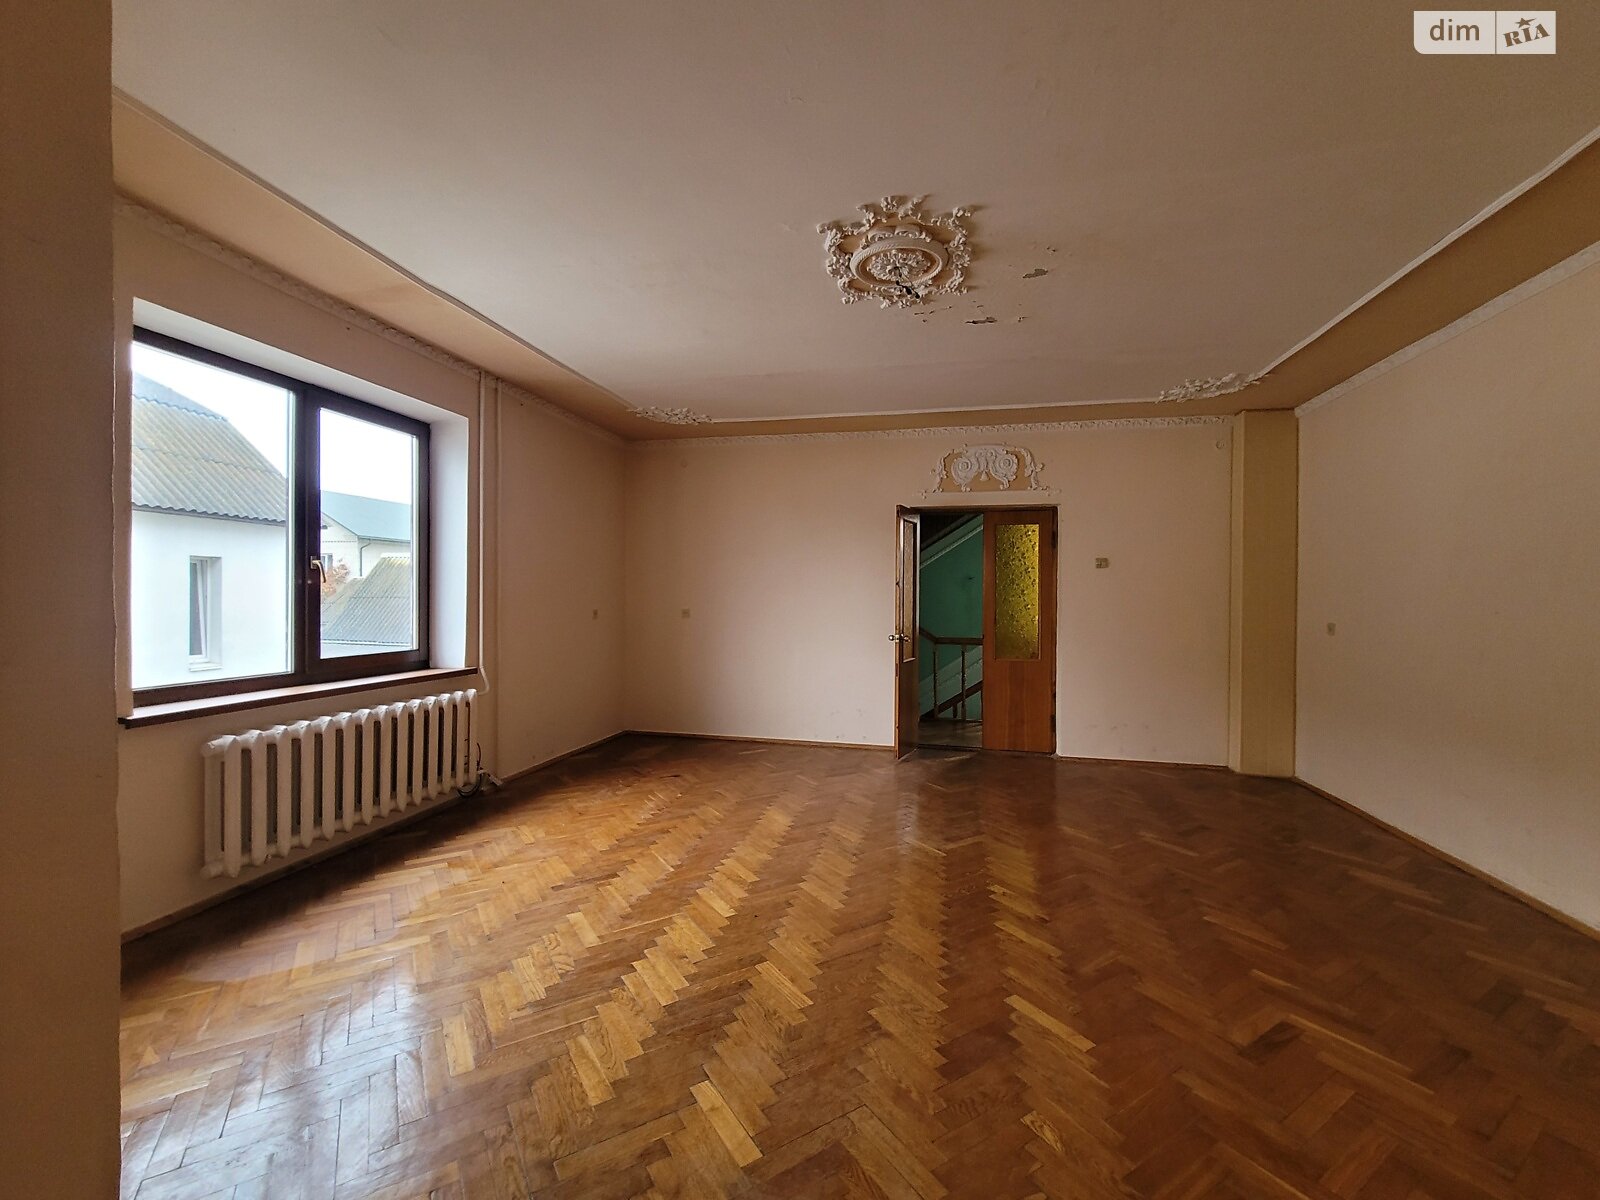 Продаж частини будинку в Біліій, вулиця Наливайка, 6 кімнат фото 1